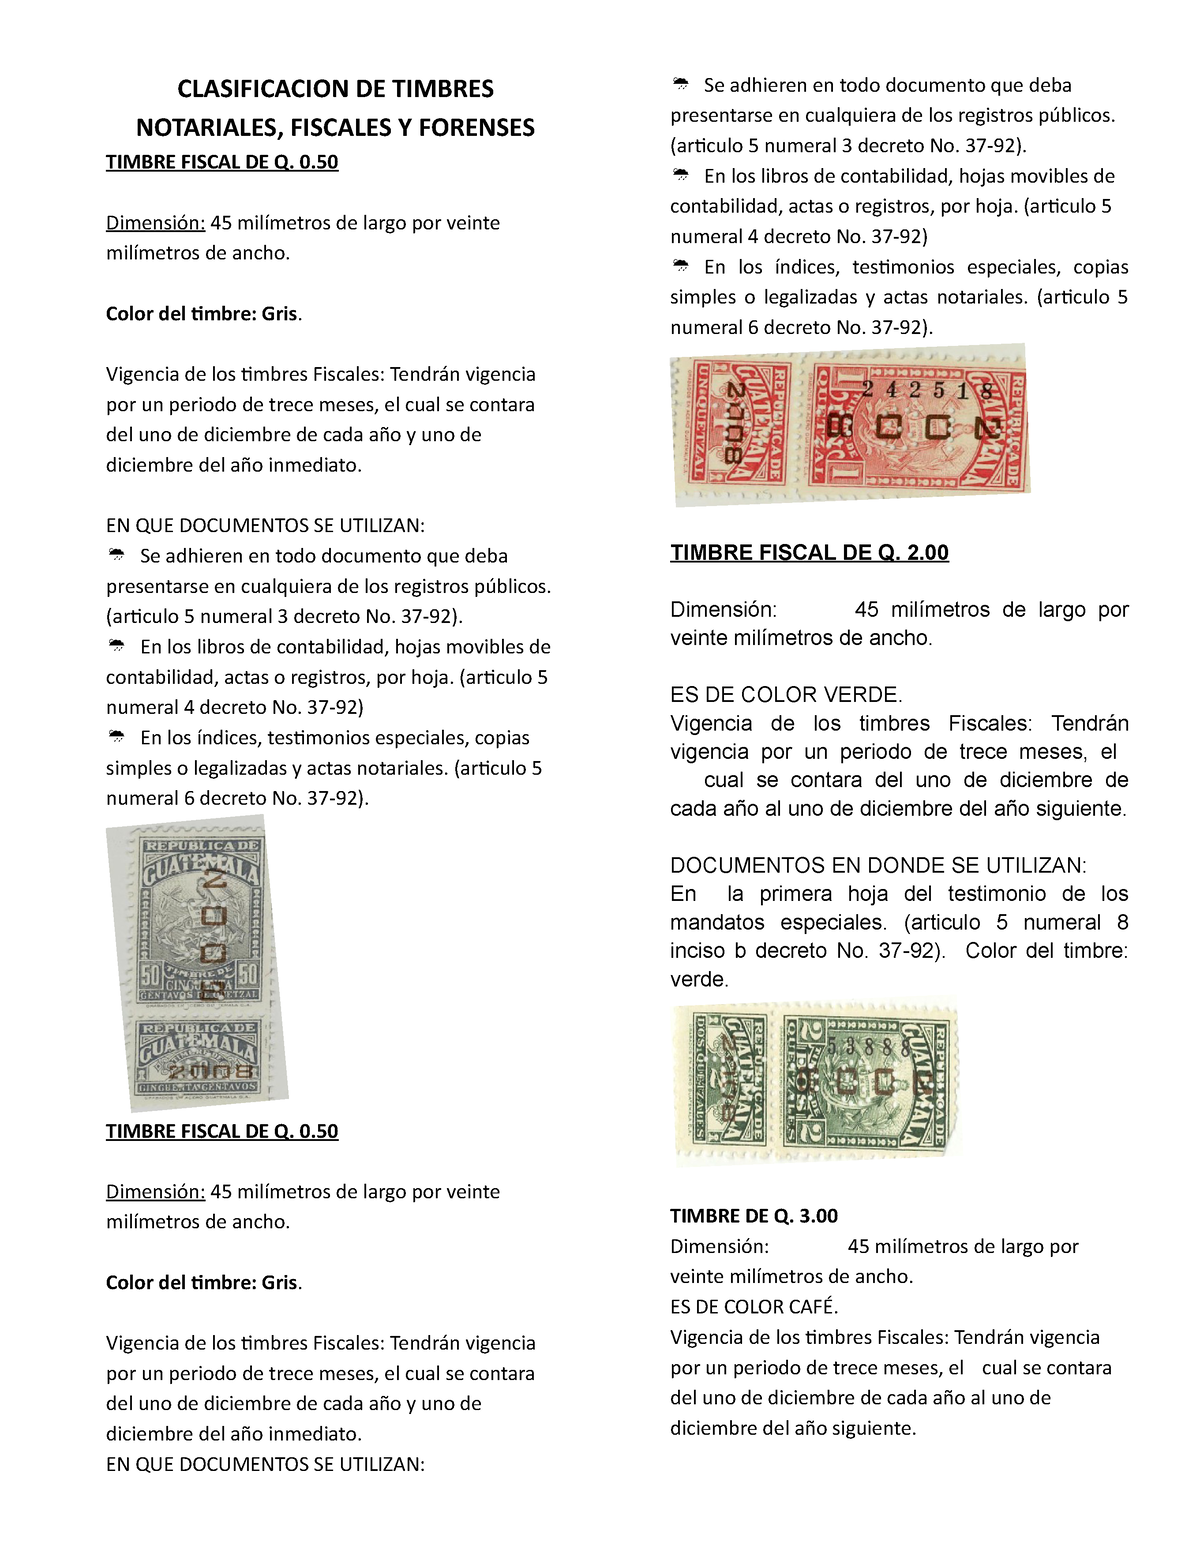 Clasificación timbres fiscales, forenses y notariales CLASIFICACION